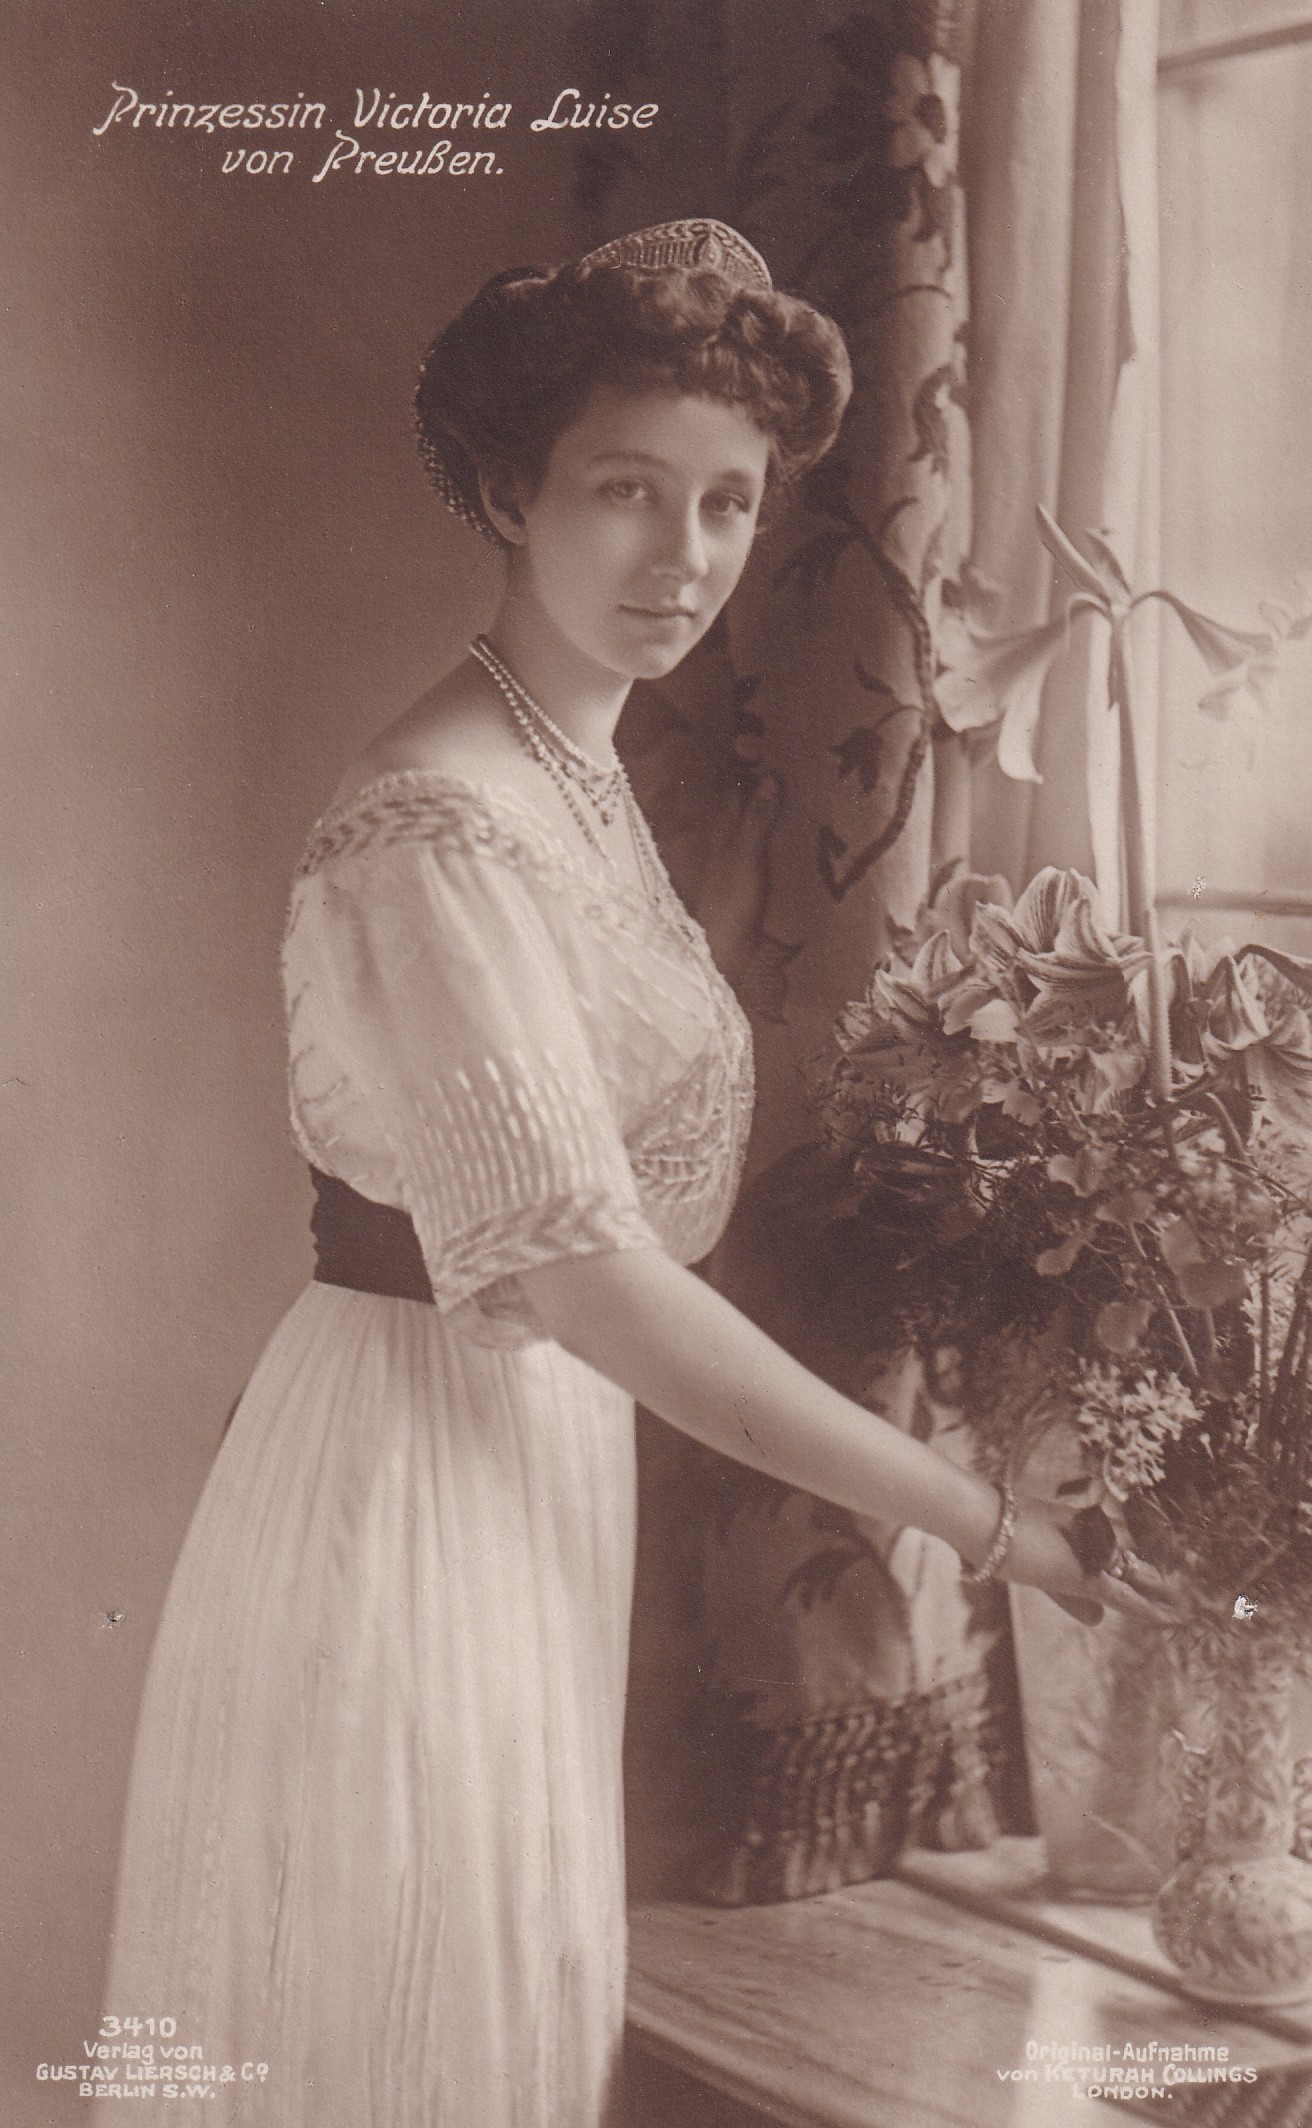 Bildpostkarte mit Foto der Prinzessin Victoria Luise von Preußen, 1911 (Schloß Wernigerode GmbH RR-F)